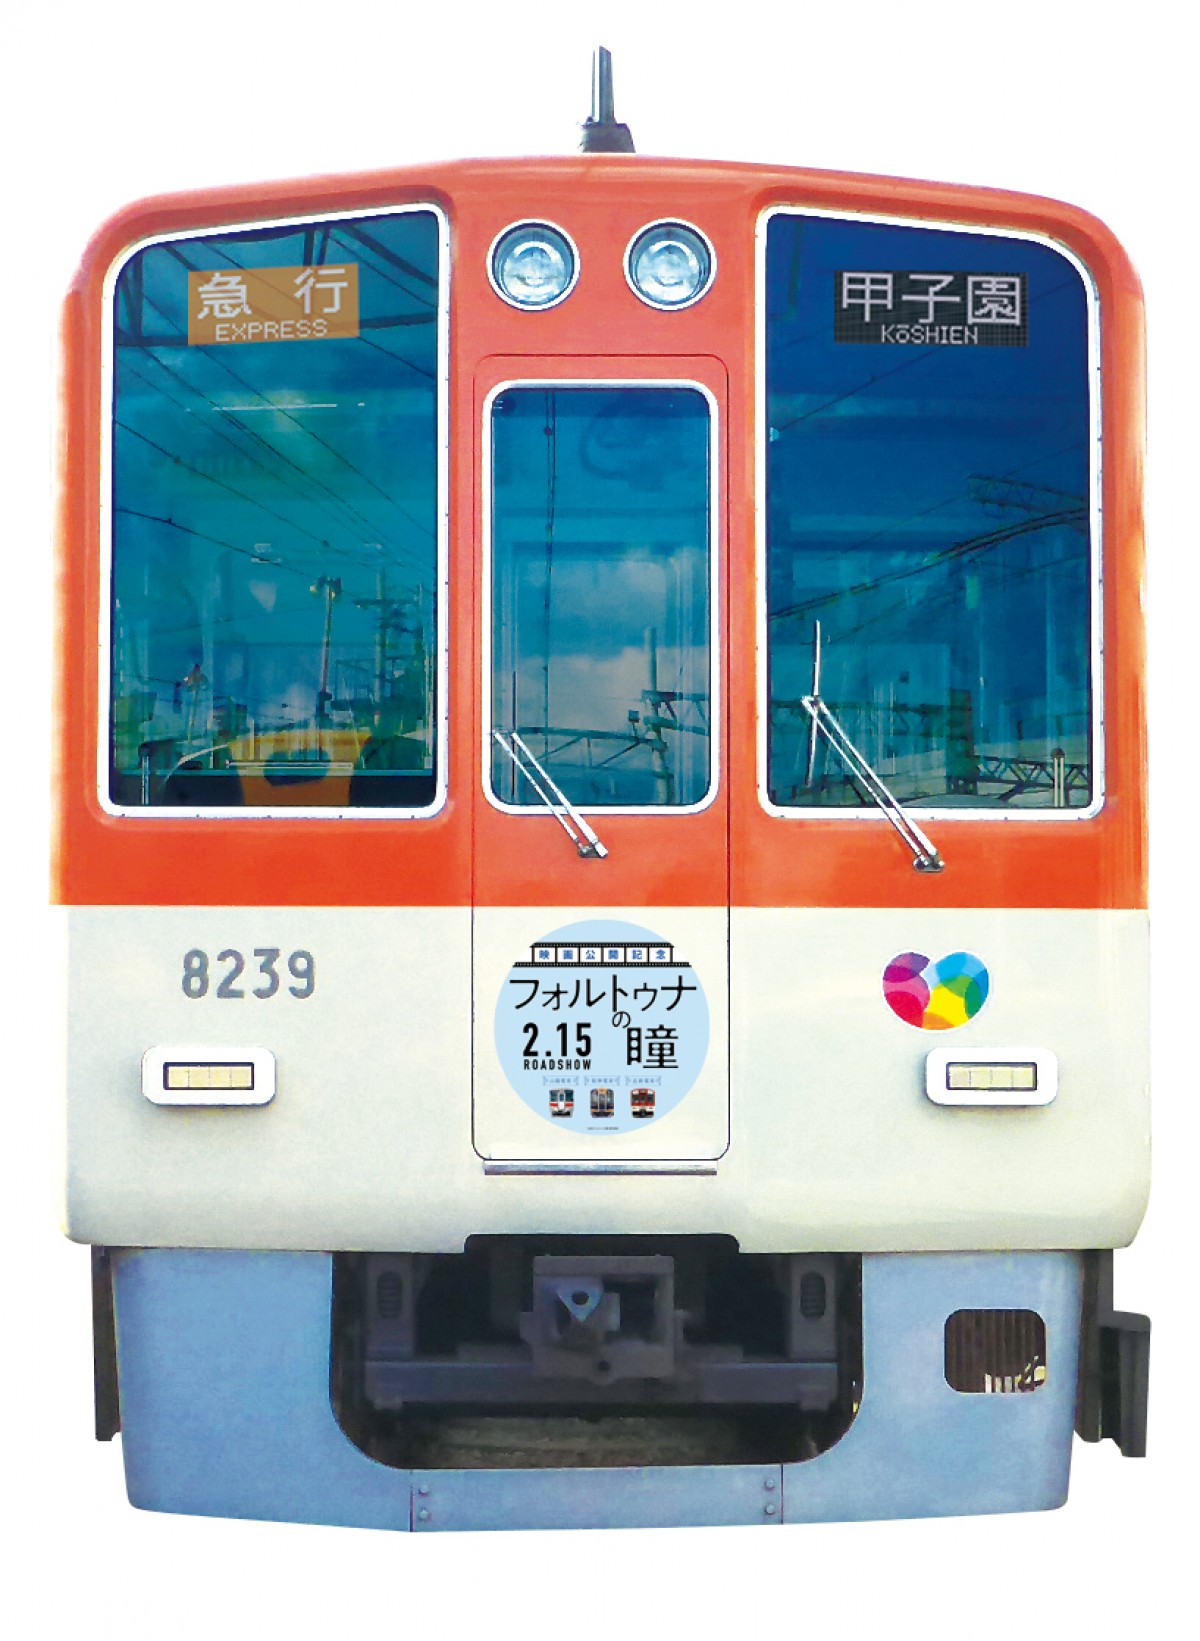 映画『フォルトゥナの瞳』号が私鉄3社で運行　神戸から奈良へロケ地をつなぐ